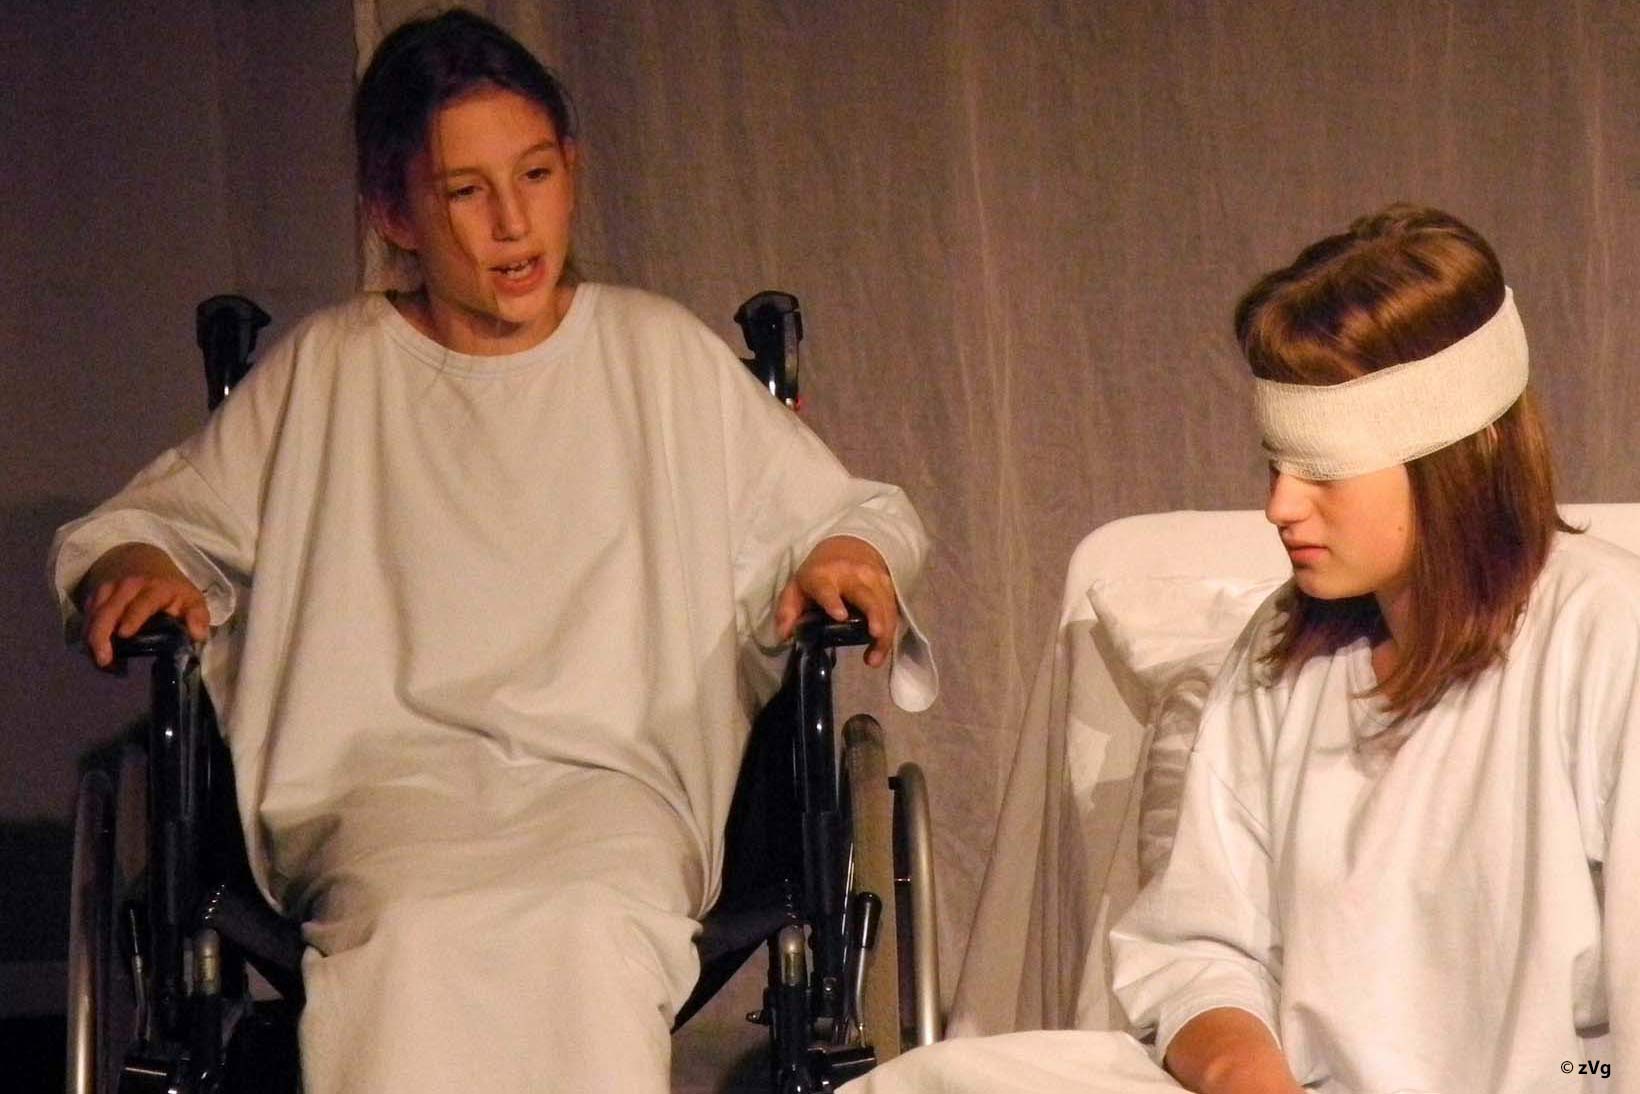 Scena di un teatro con due bambine: una seduta su una sedia a rotelle e l’altra e ipovedente.